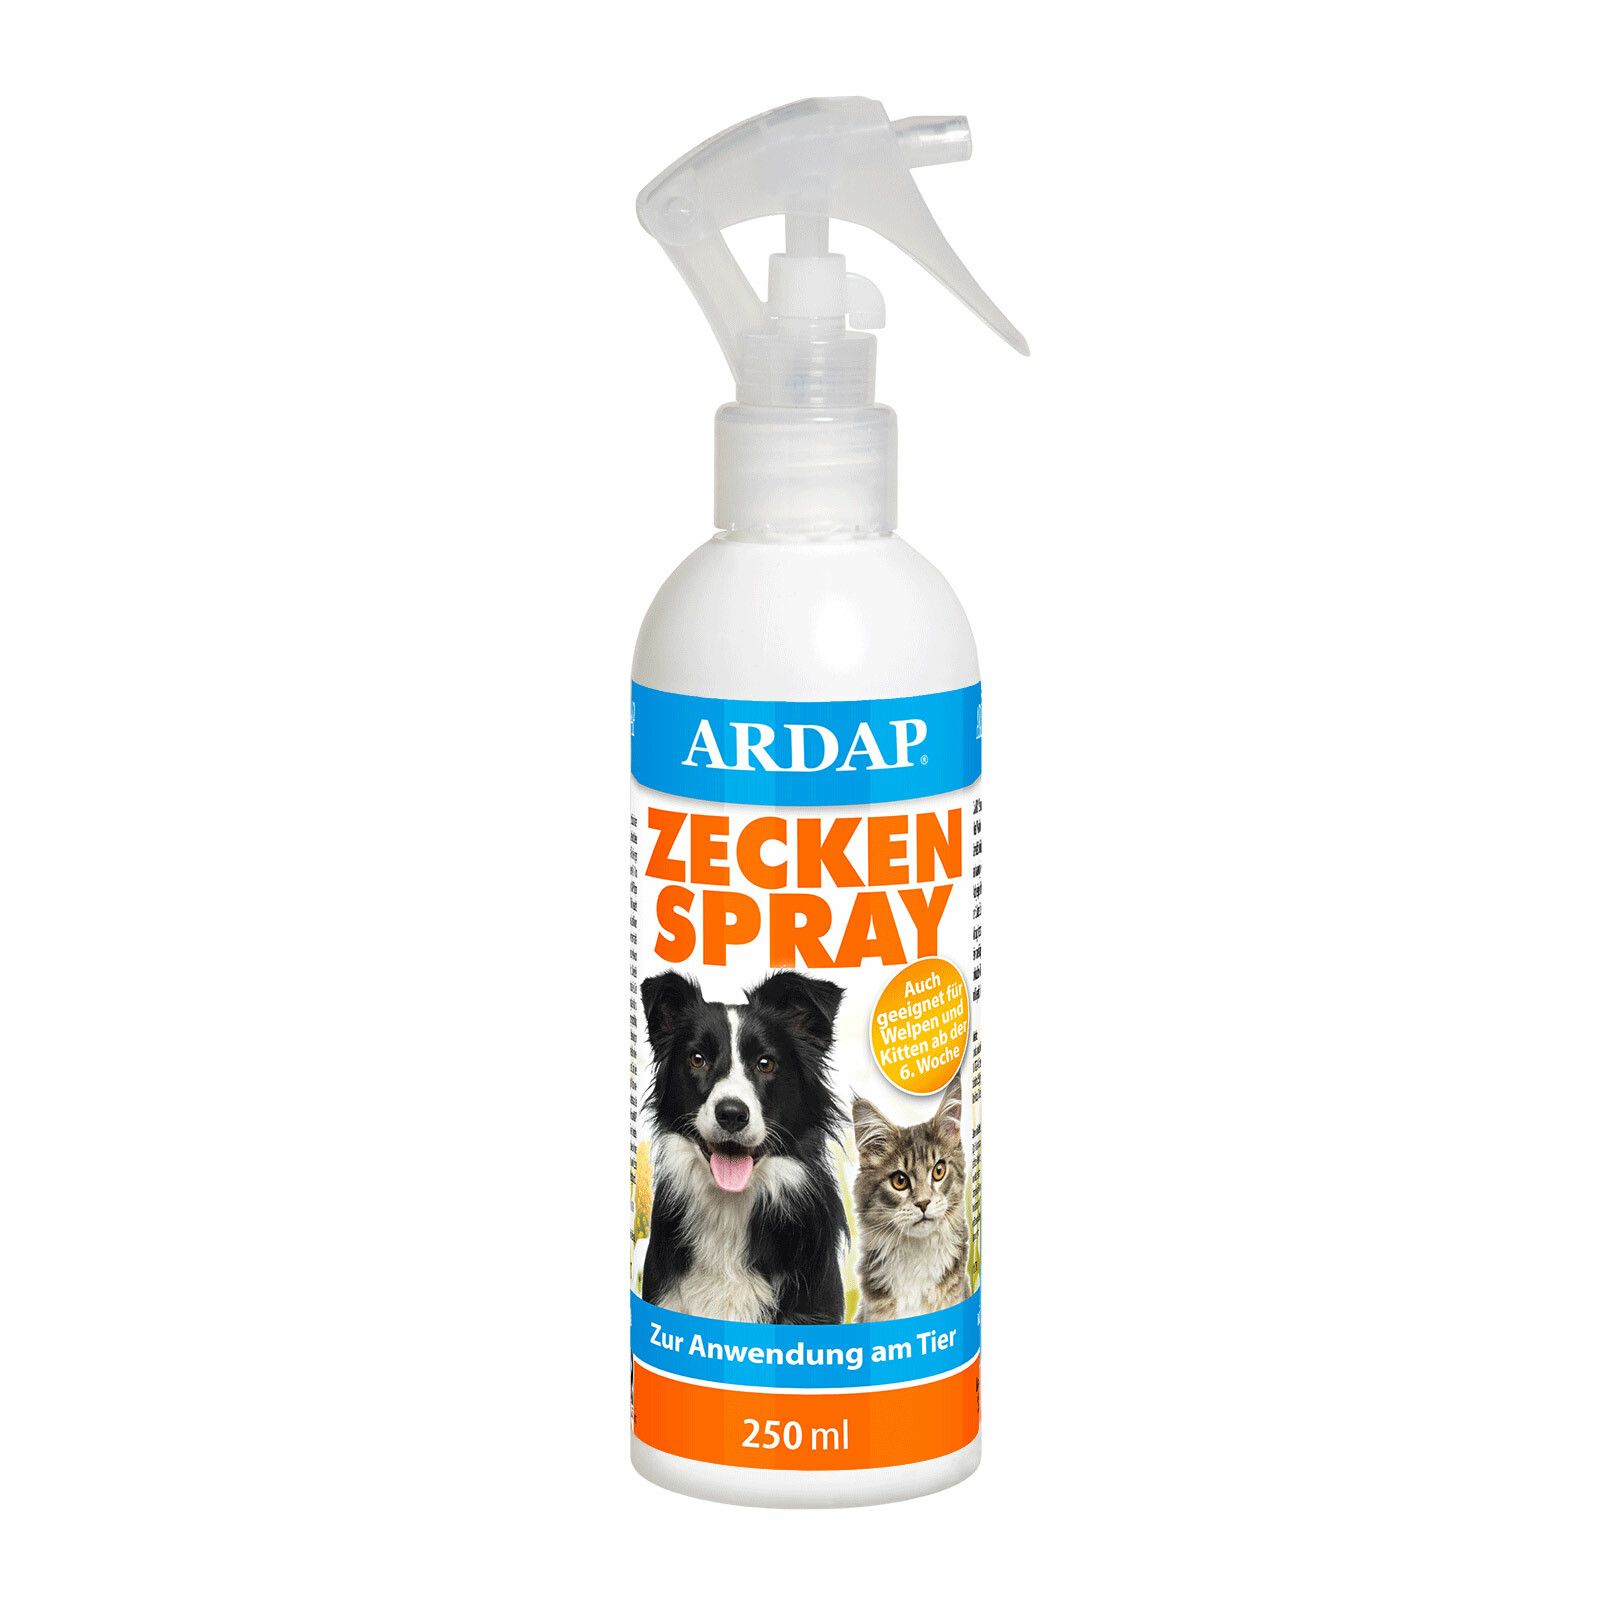 ARDAP® Zeckenspray zur Anwendung am Tier